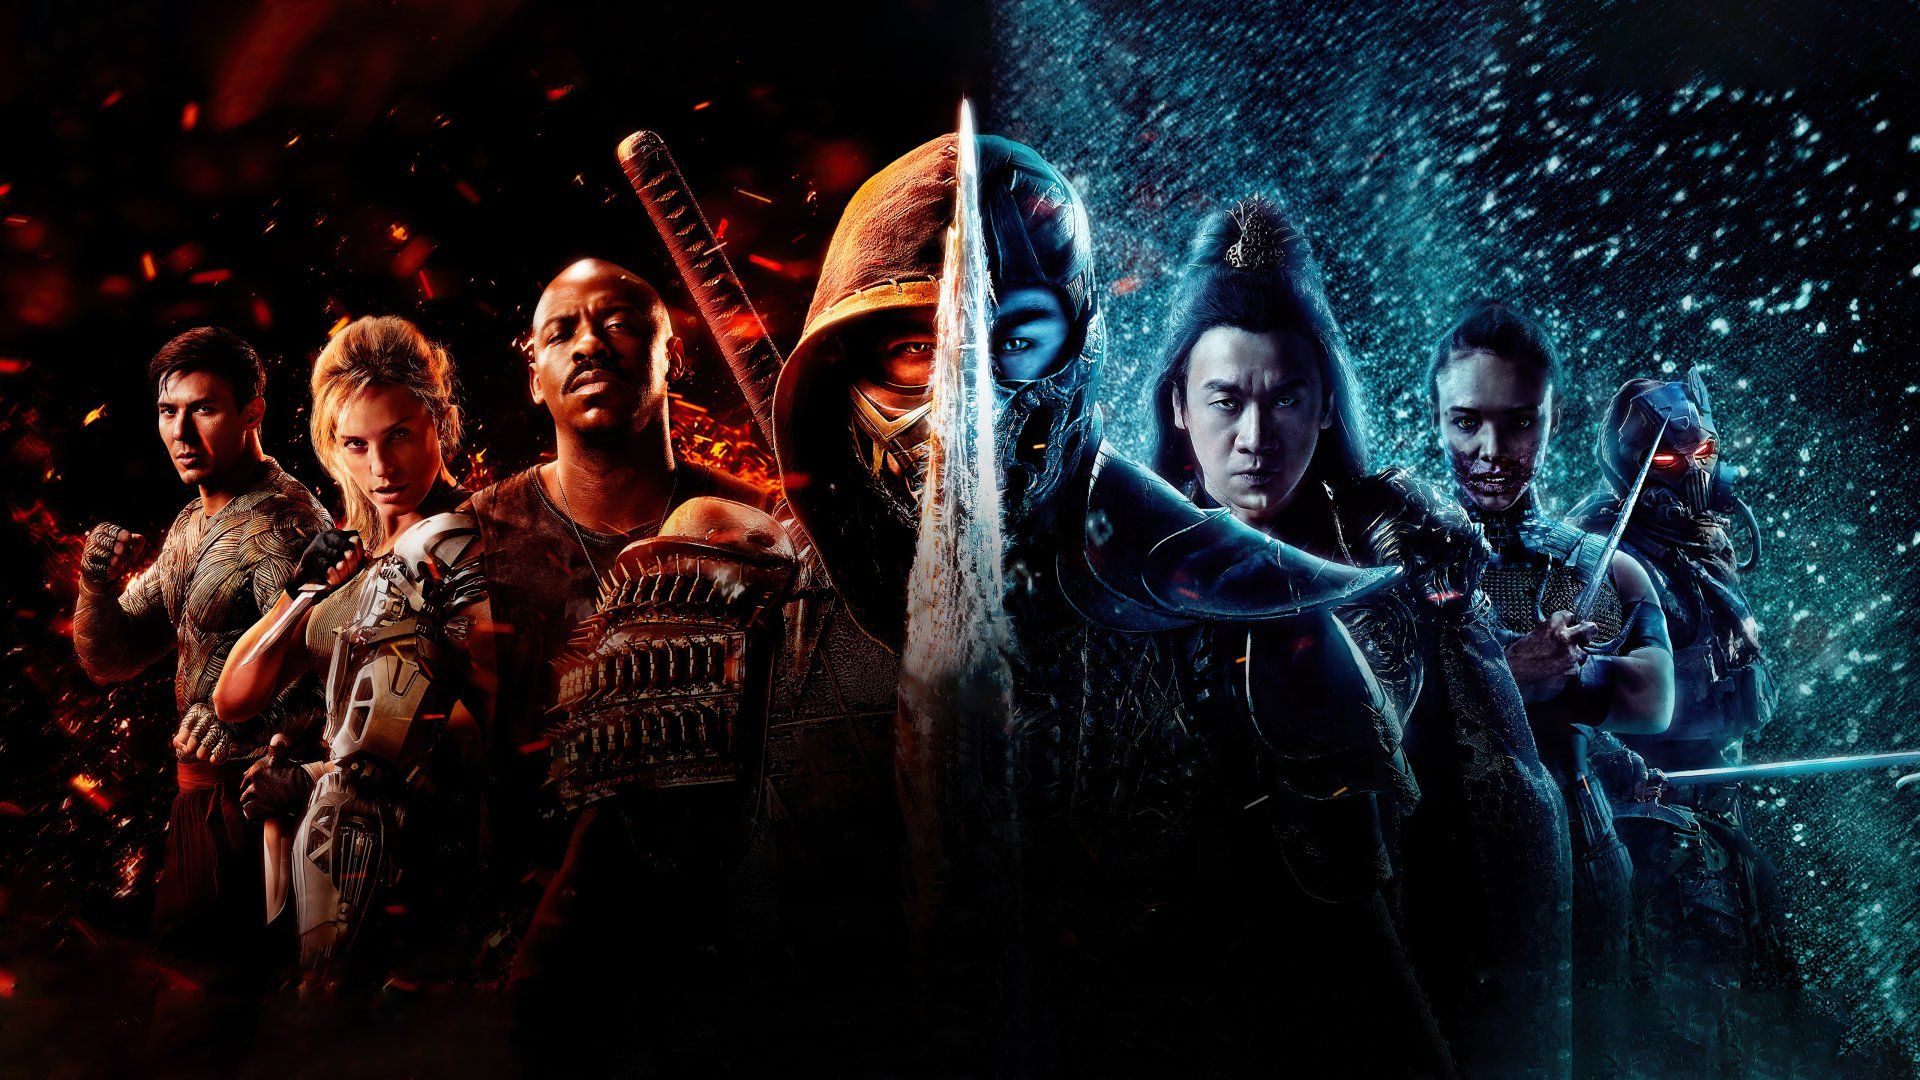 Jax (Mortal Kombat) HD Wallpaper and Background